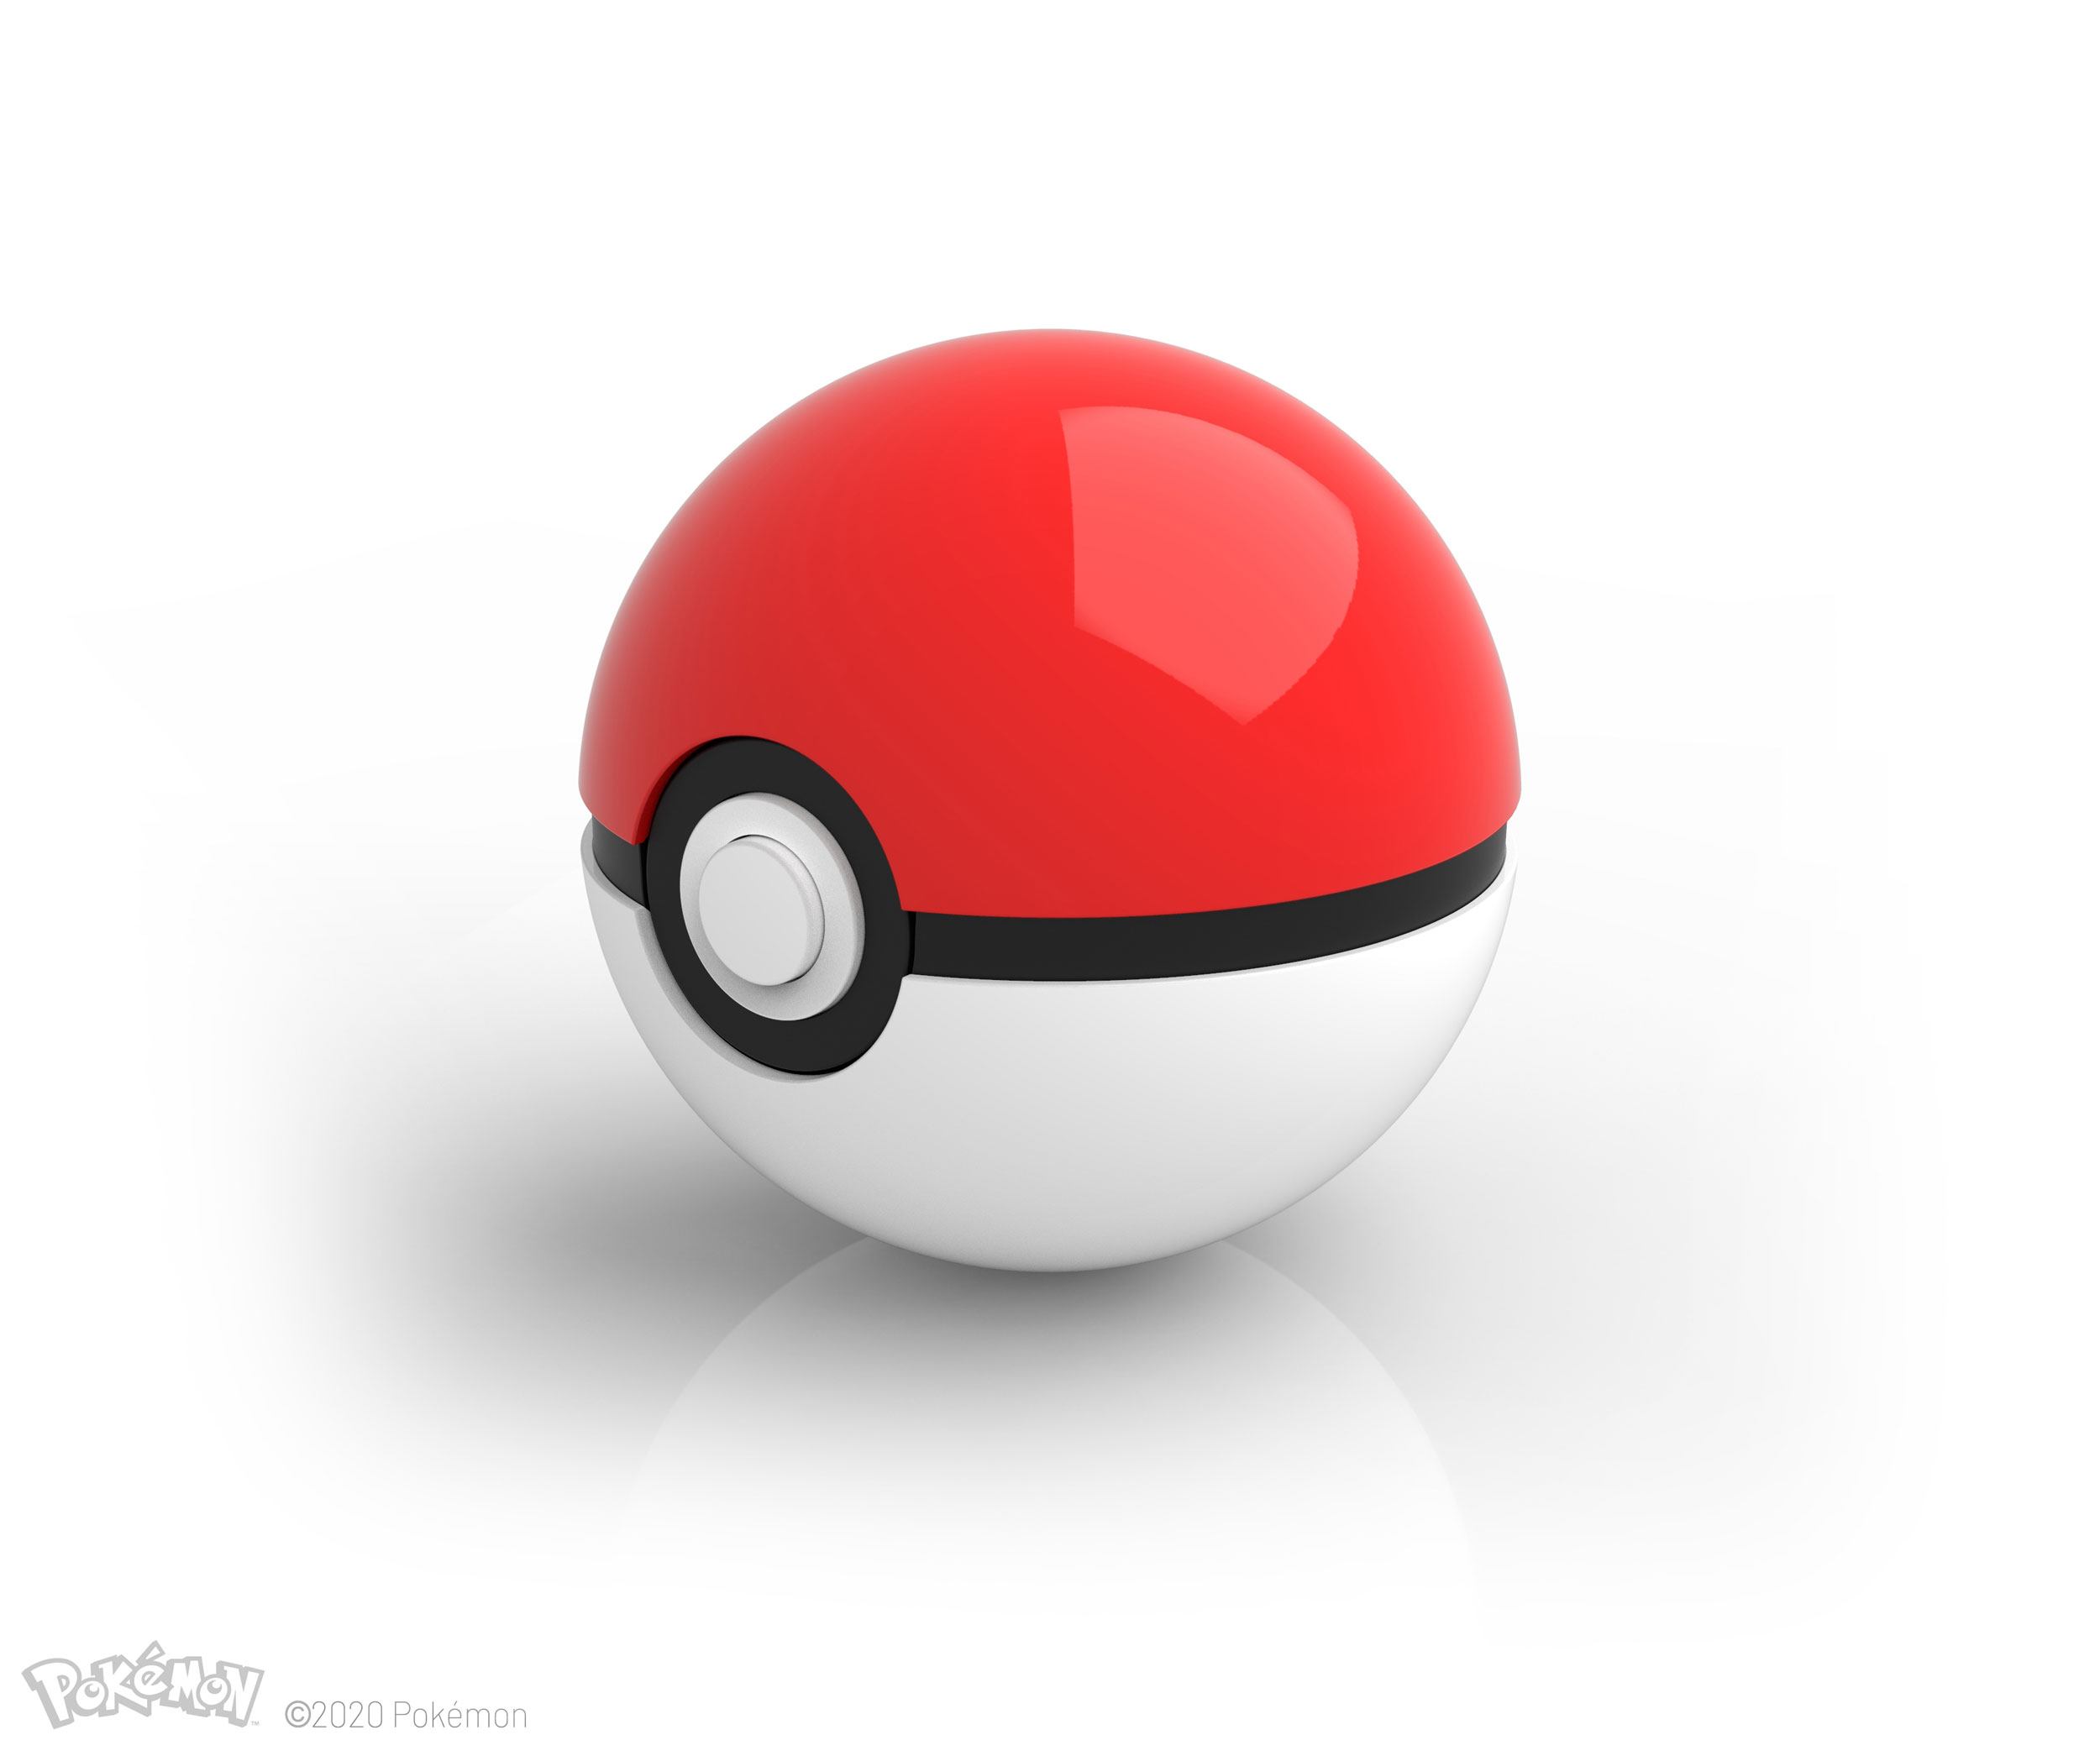 Pokémon - Poké Ball